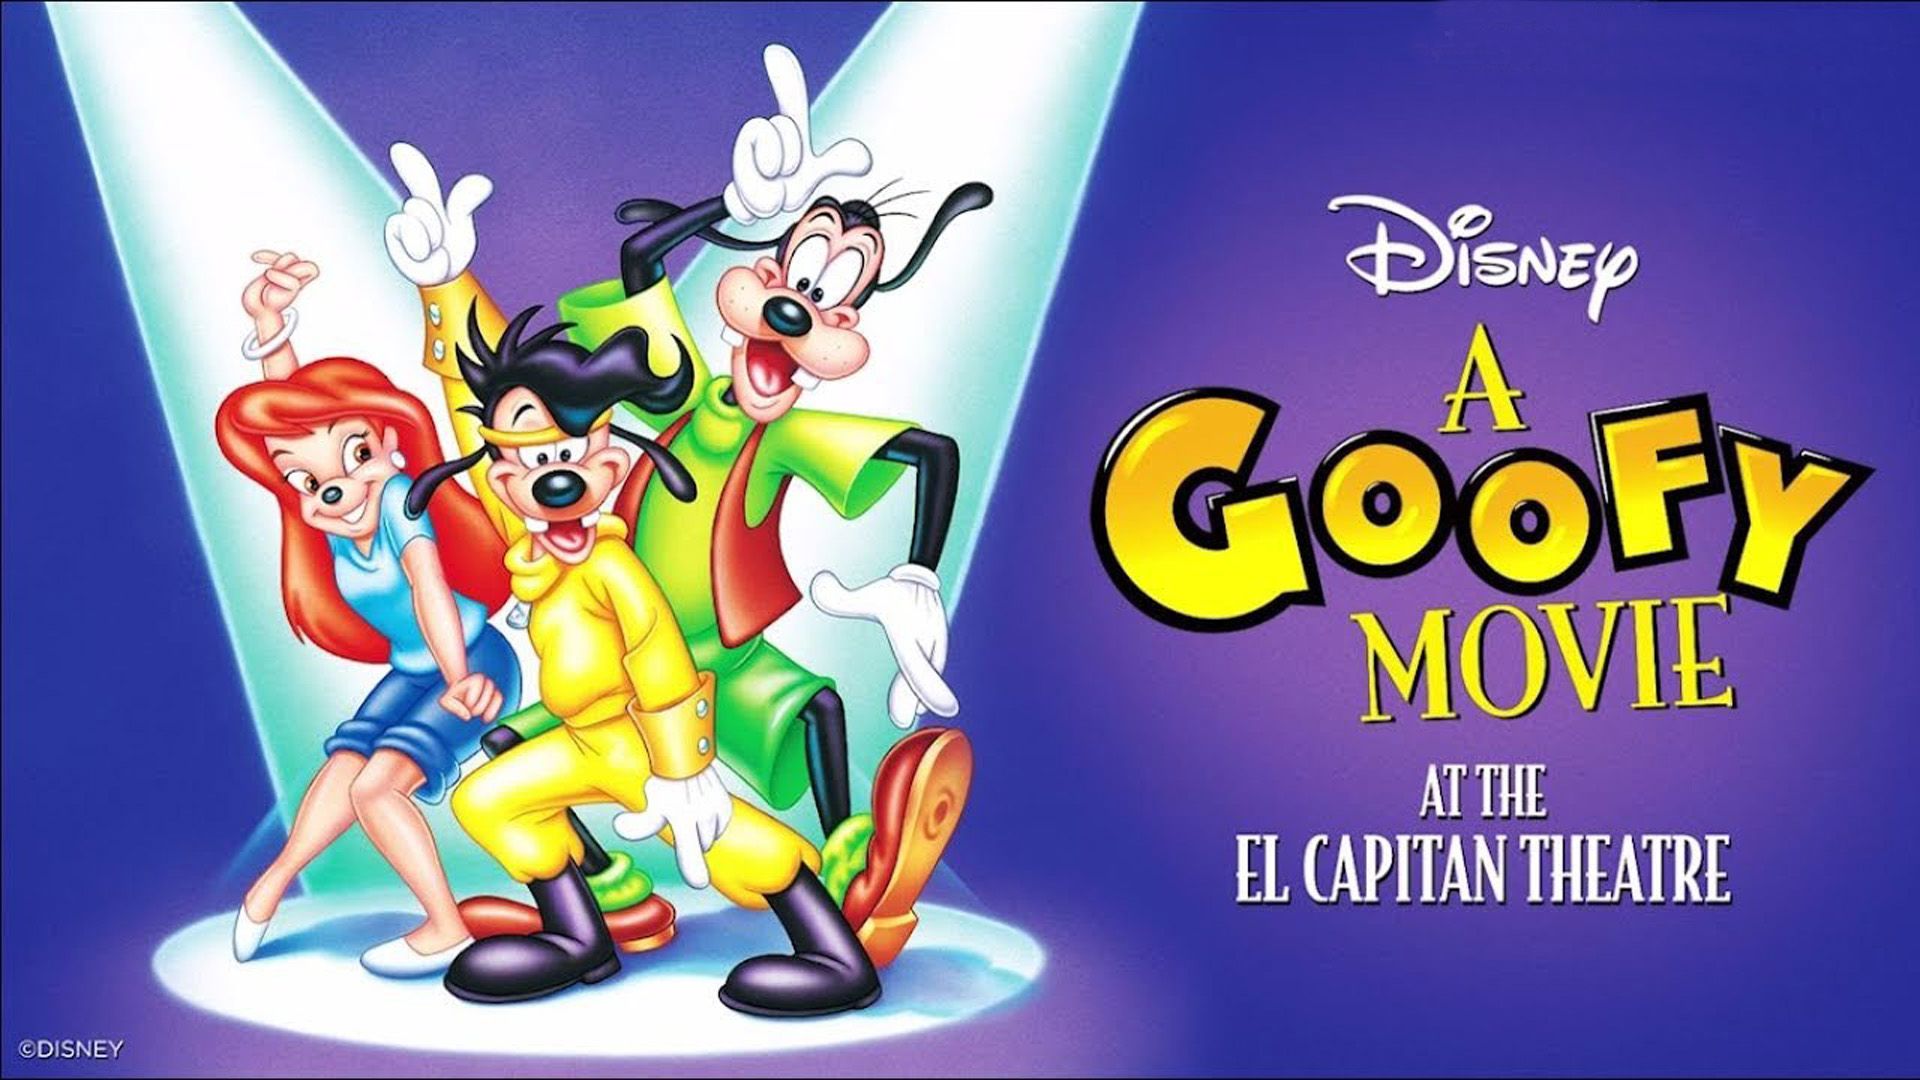 A Goofy Movie At The El Capitan Theatre Desktop Wallpaper HD For Mobile Phones And Laptops 1920x1080, Wallpaper13.com